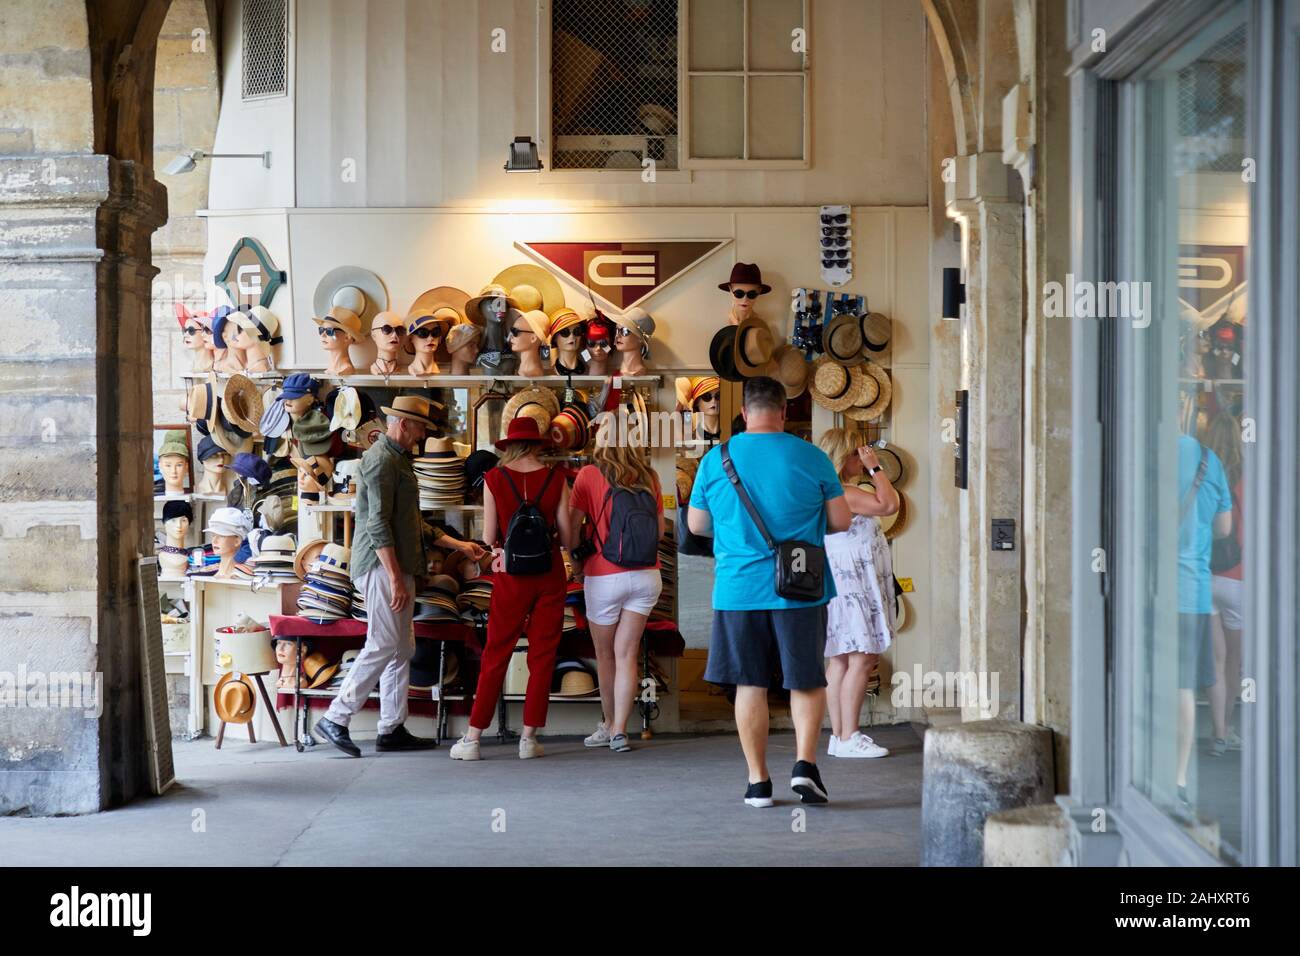 Vente de la chapellerie, chapeaux, Place des Vosges, Paris, France Photo  Stock - Alamy